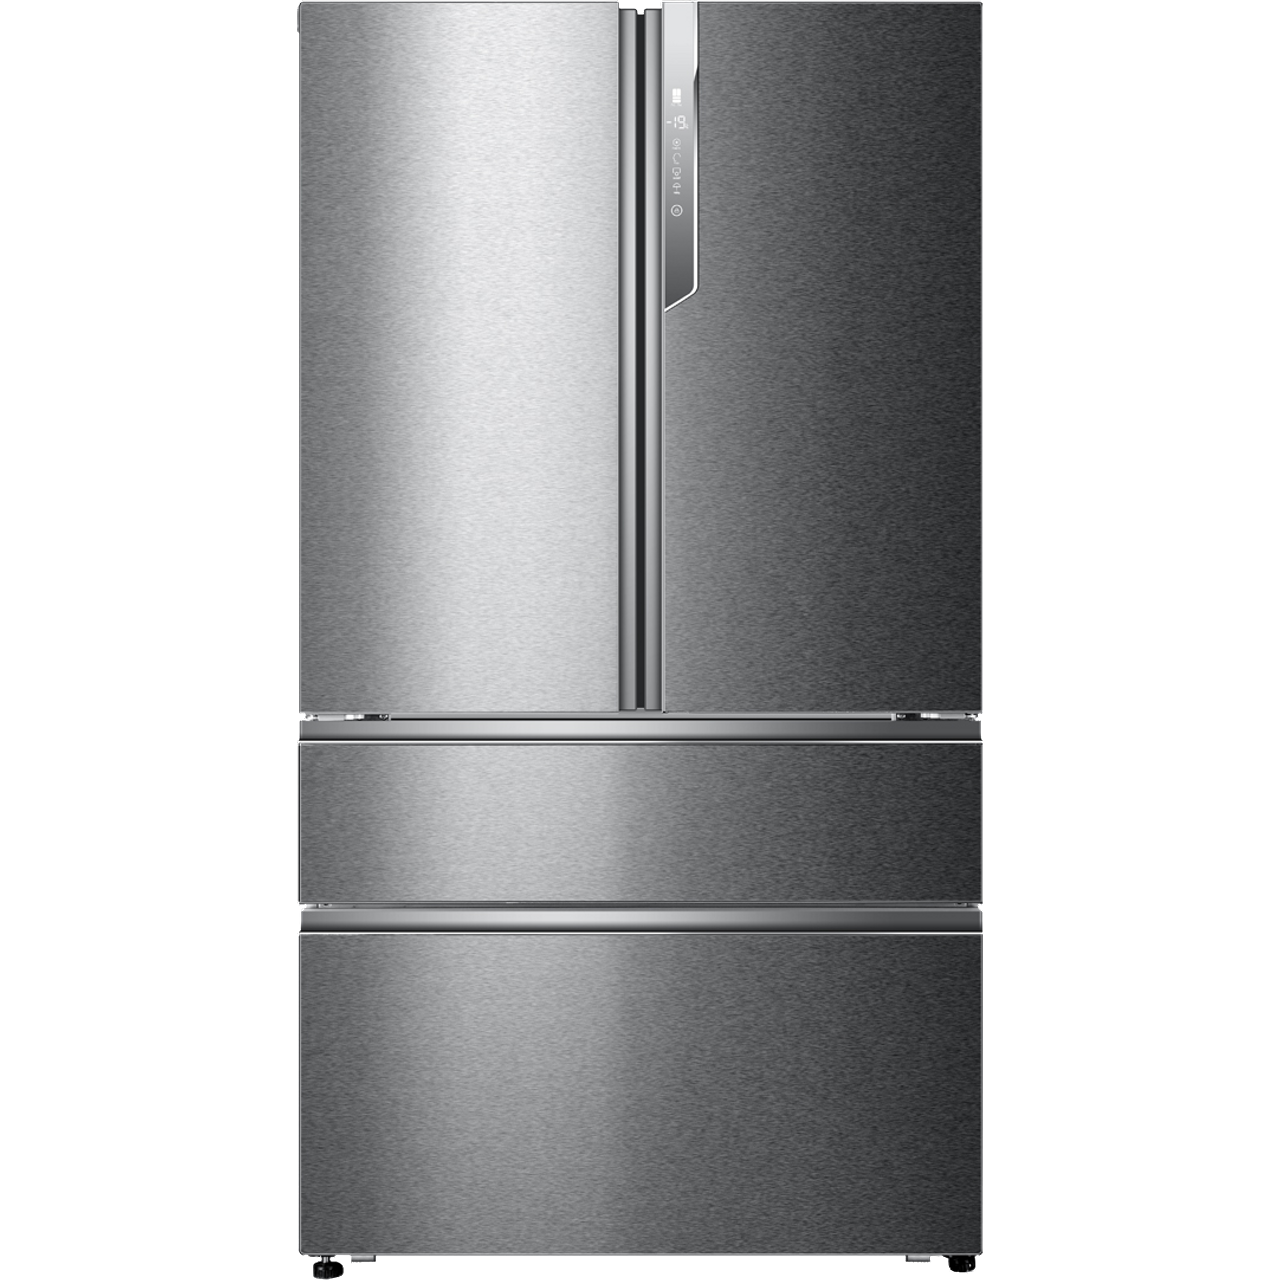 18++ Best fridge freezer deals uk 2020 ideas